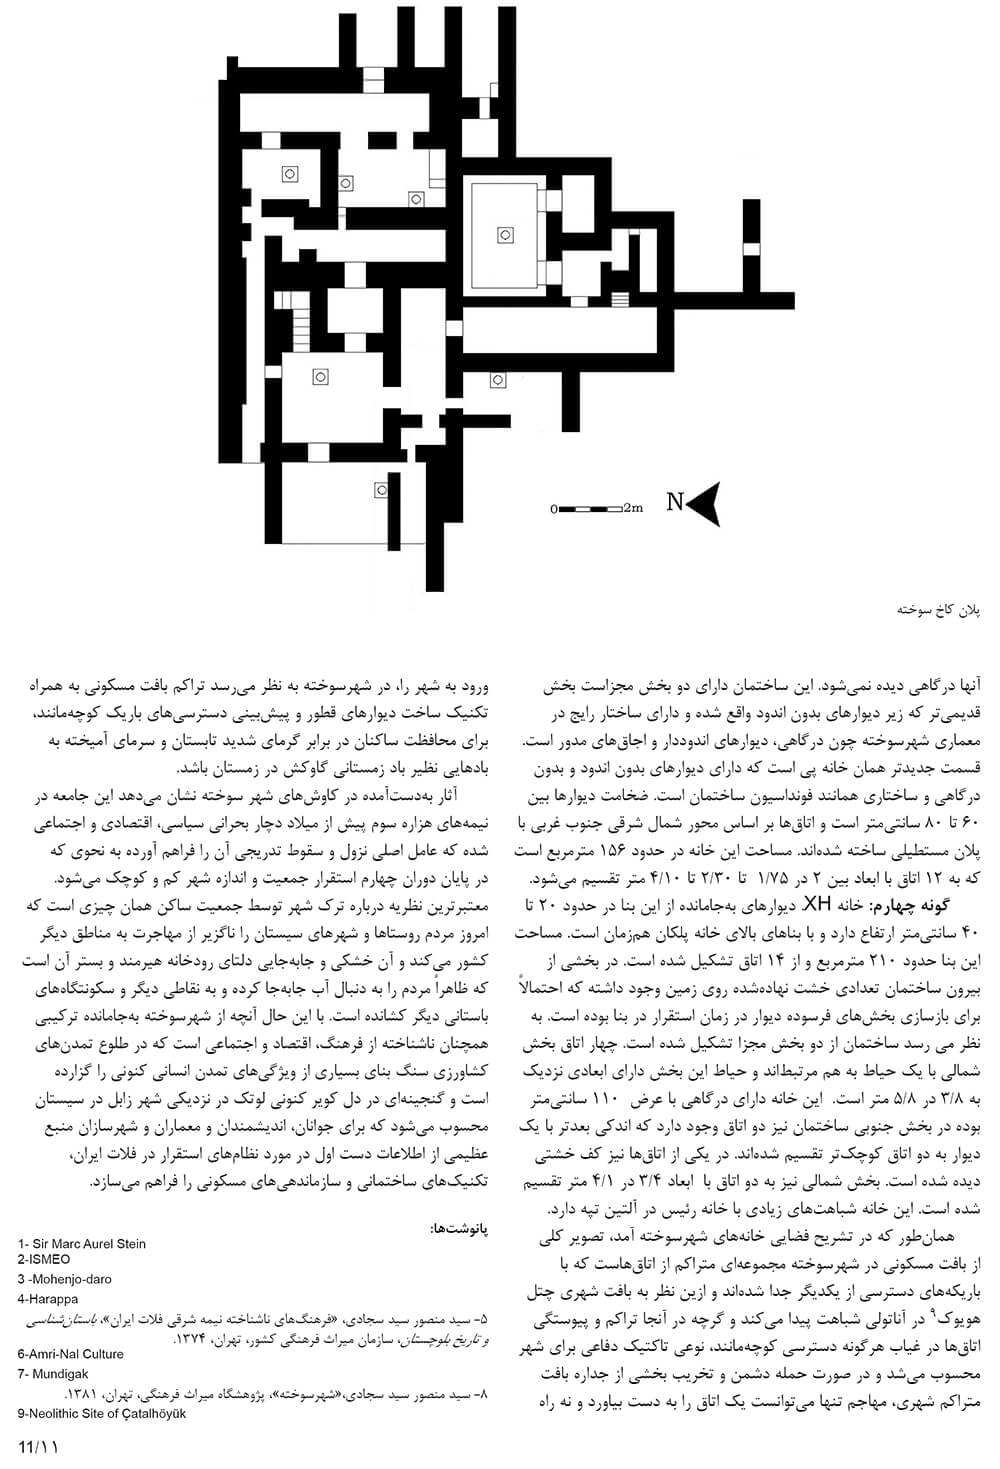 picture no. 5 of publication: shahr e sohkhteh, author: Kambiz Moshtaq